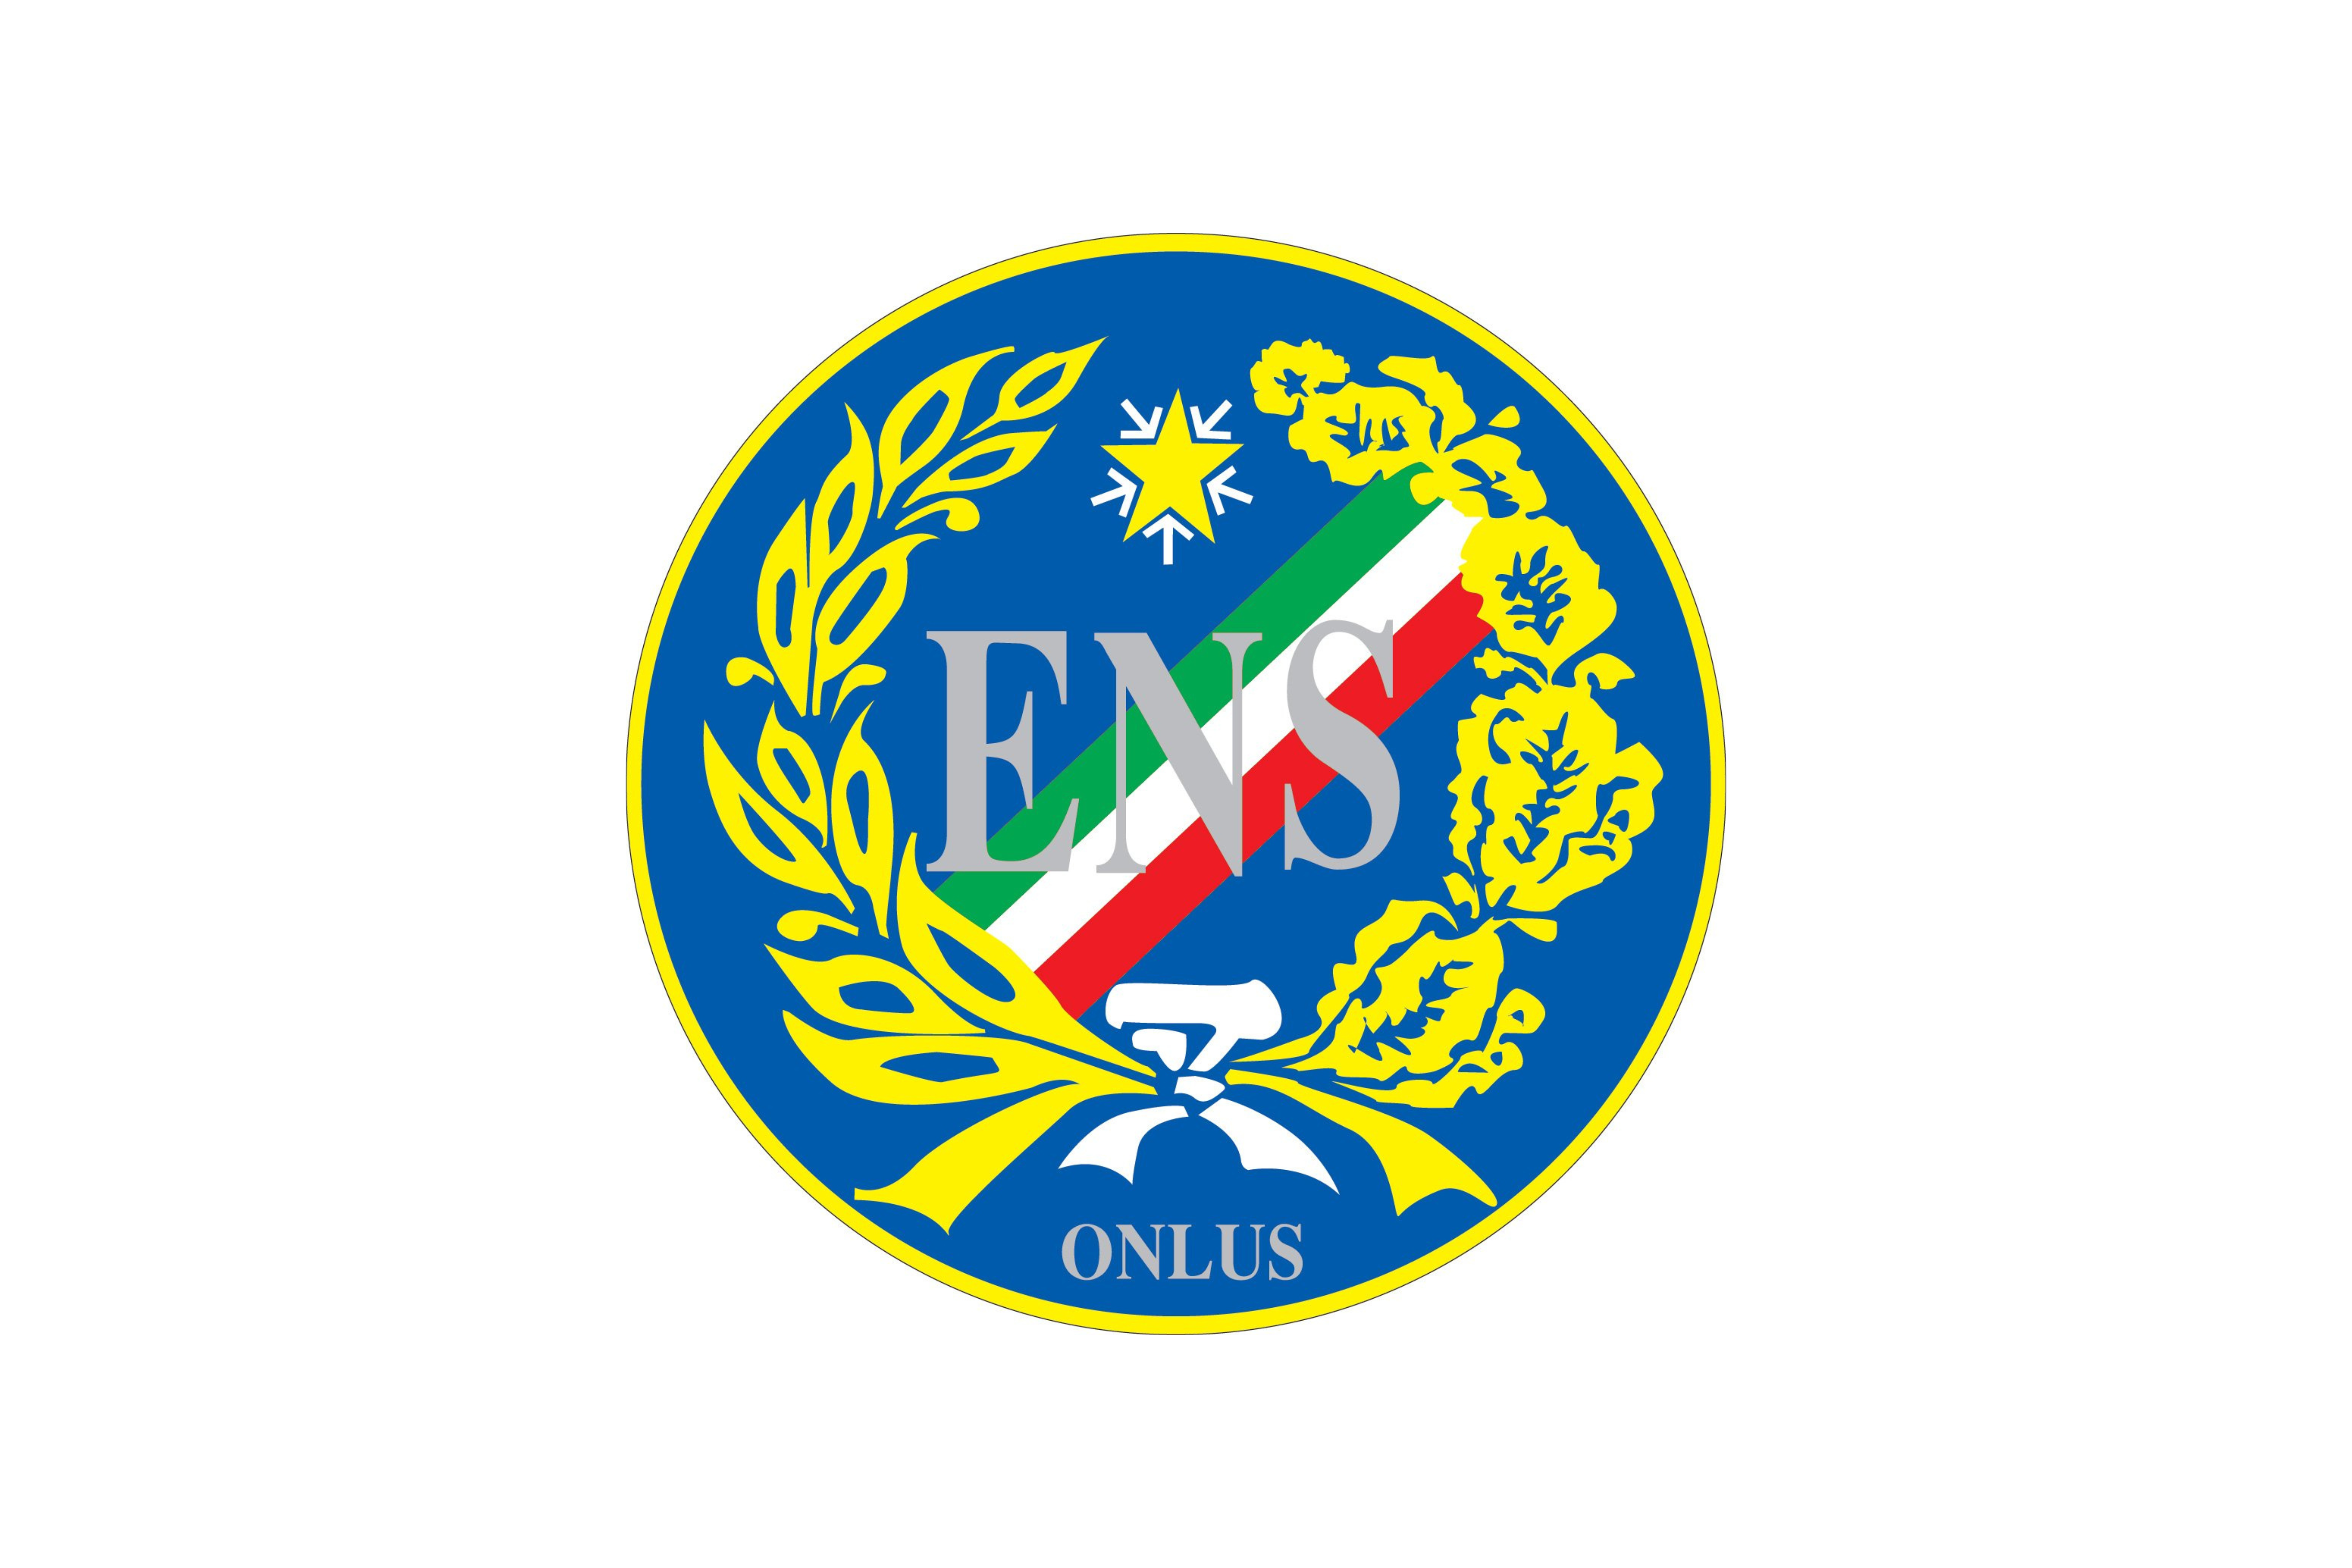 Logo Ente Nazionale Sordi